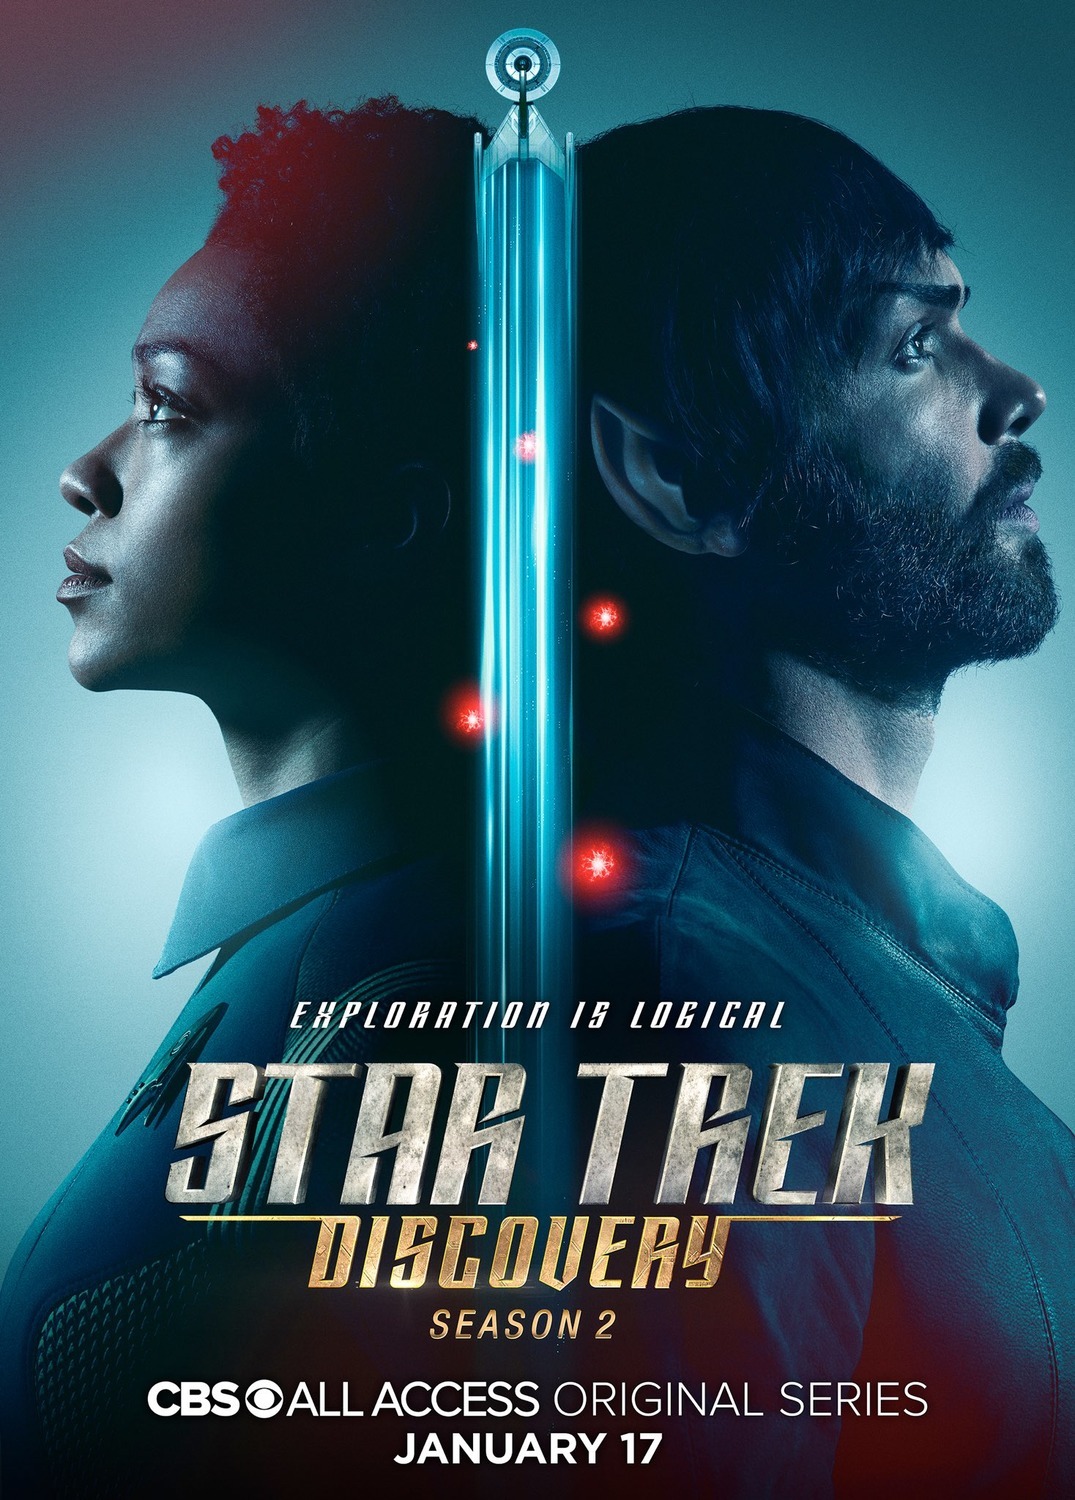 ดูหนังออนไลน์ฟรี Star Trek Discovery Season 2 EP.12 สตาร์ เทรค ดิสคัฟเวอรี่ ซีซั่นที่ 2 ตอนที่ 12